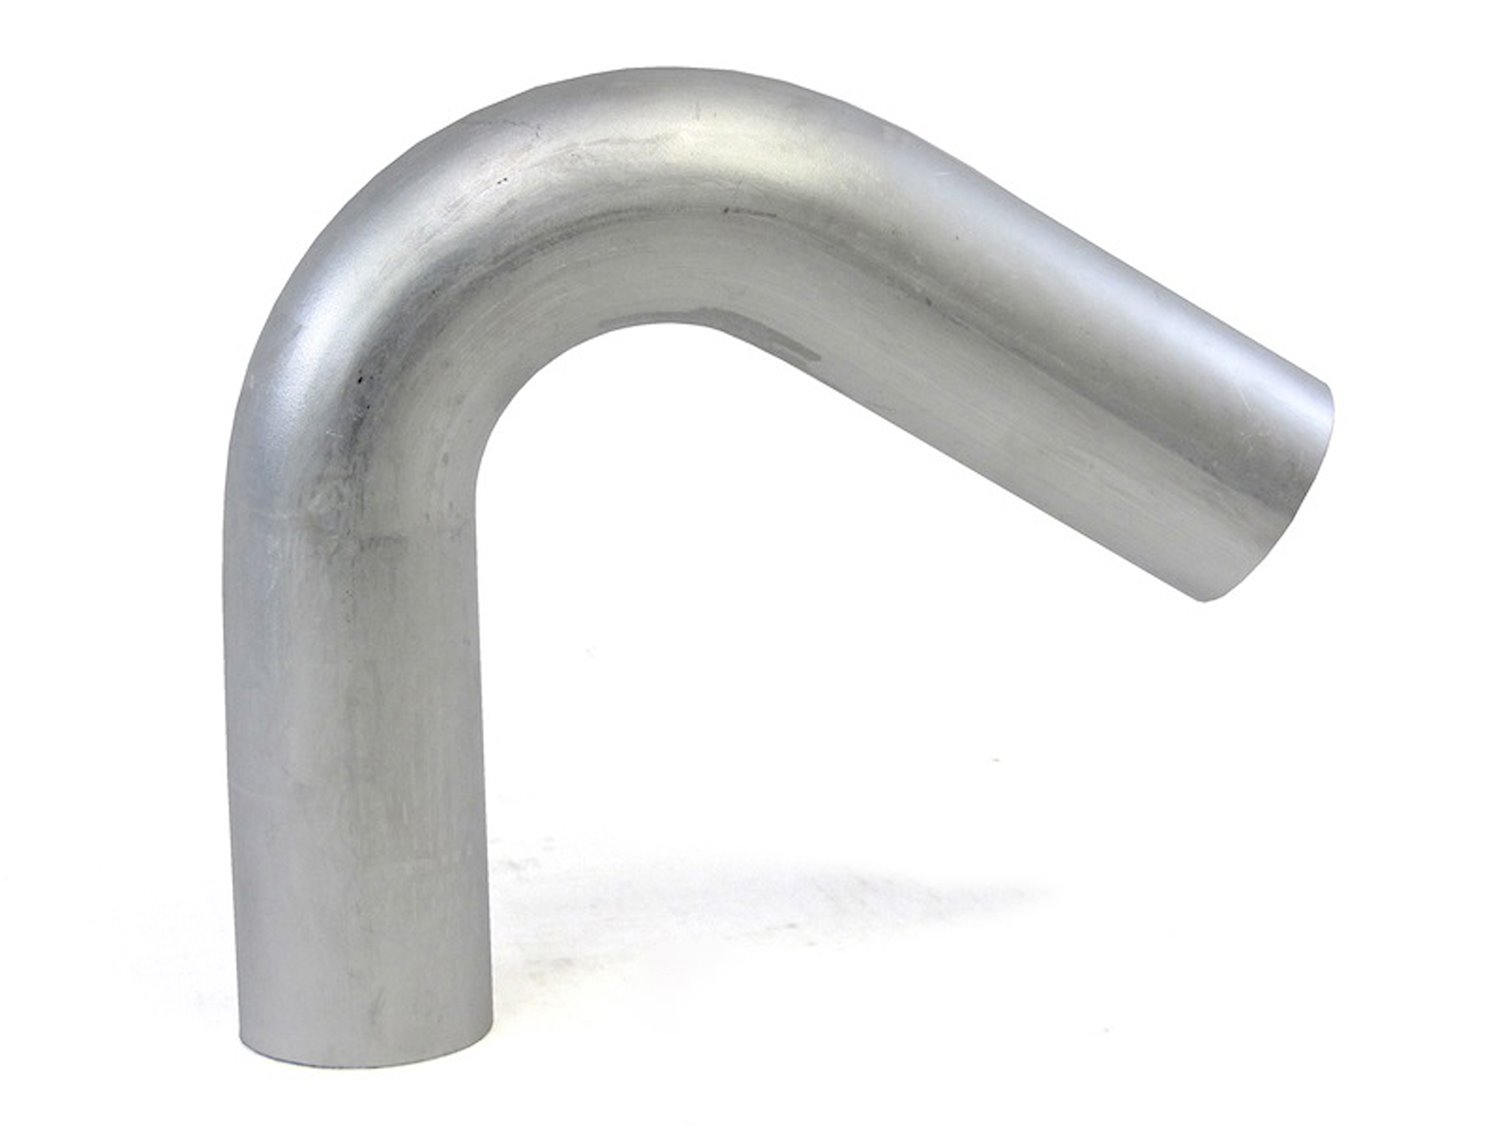 AT120-275-CLR-43 Aluminum Elbow Tube, 6061 Aluminum, 120-Degree Bend Elbow Tubing, 2-3/4 in. OD, Large Radius, 4-5/16 in. CLR